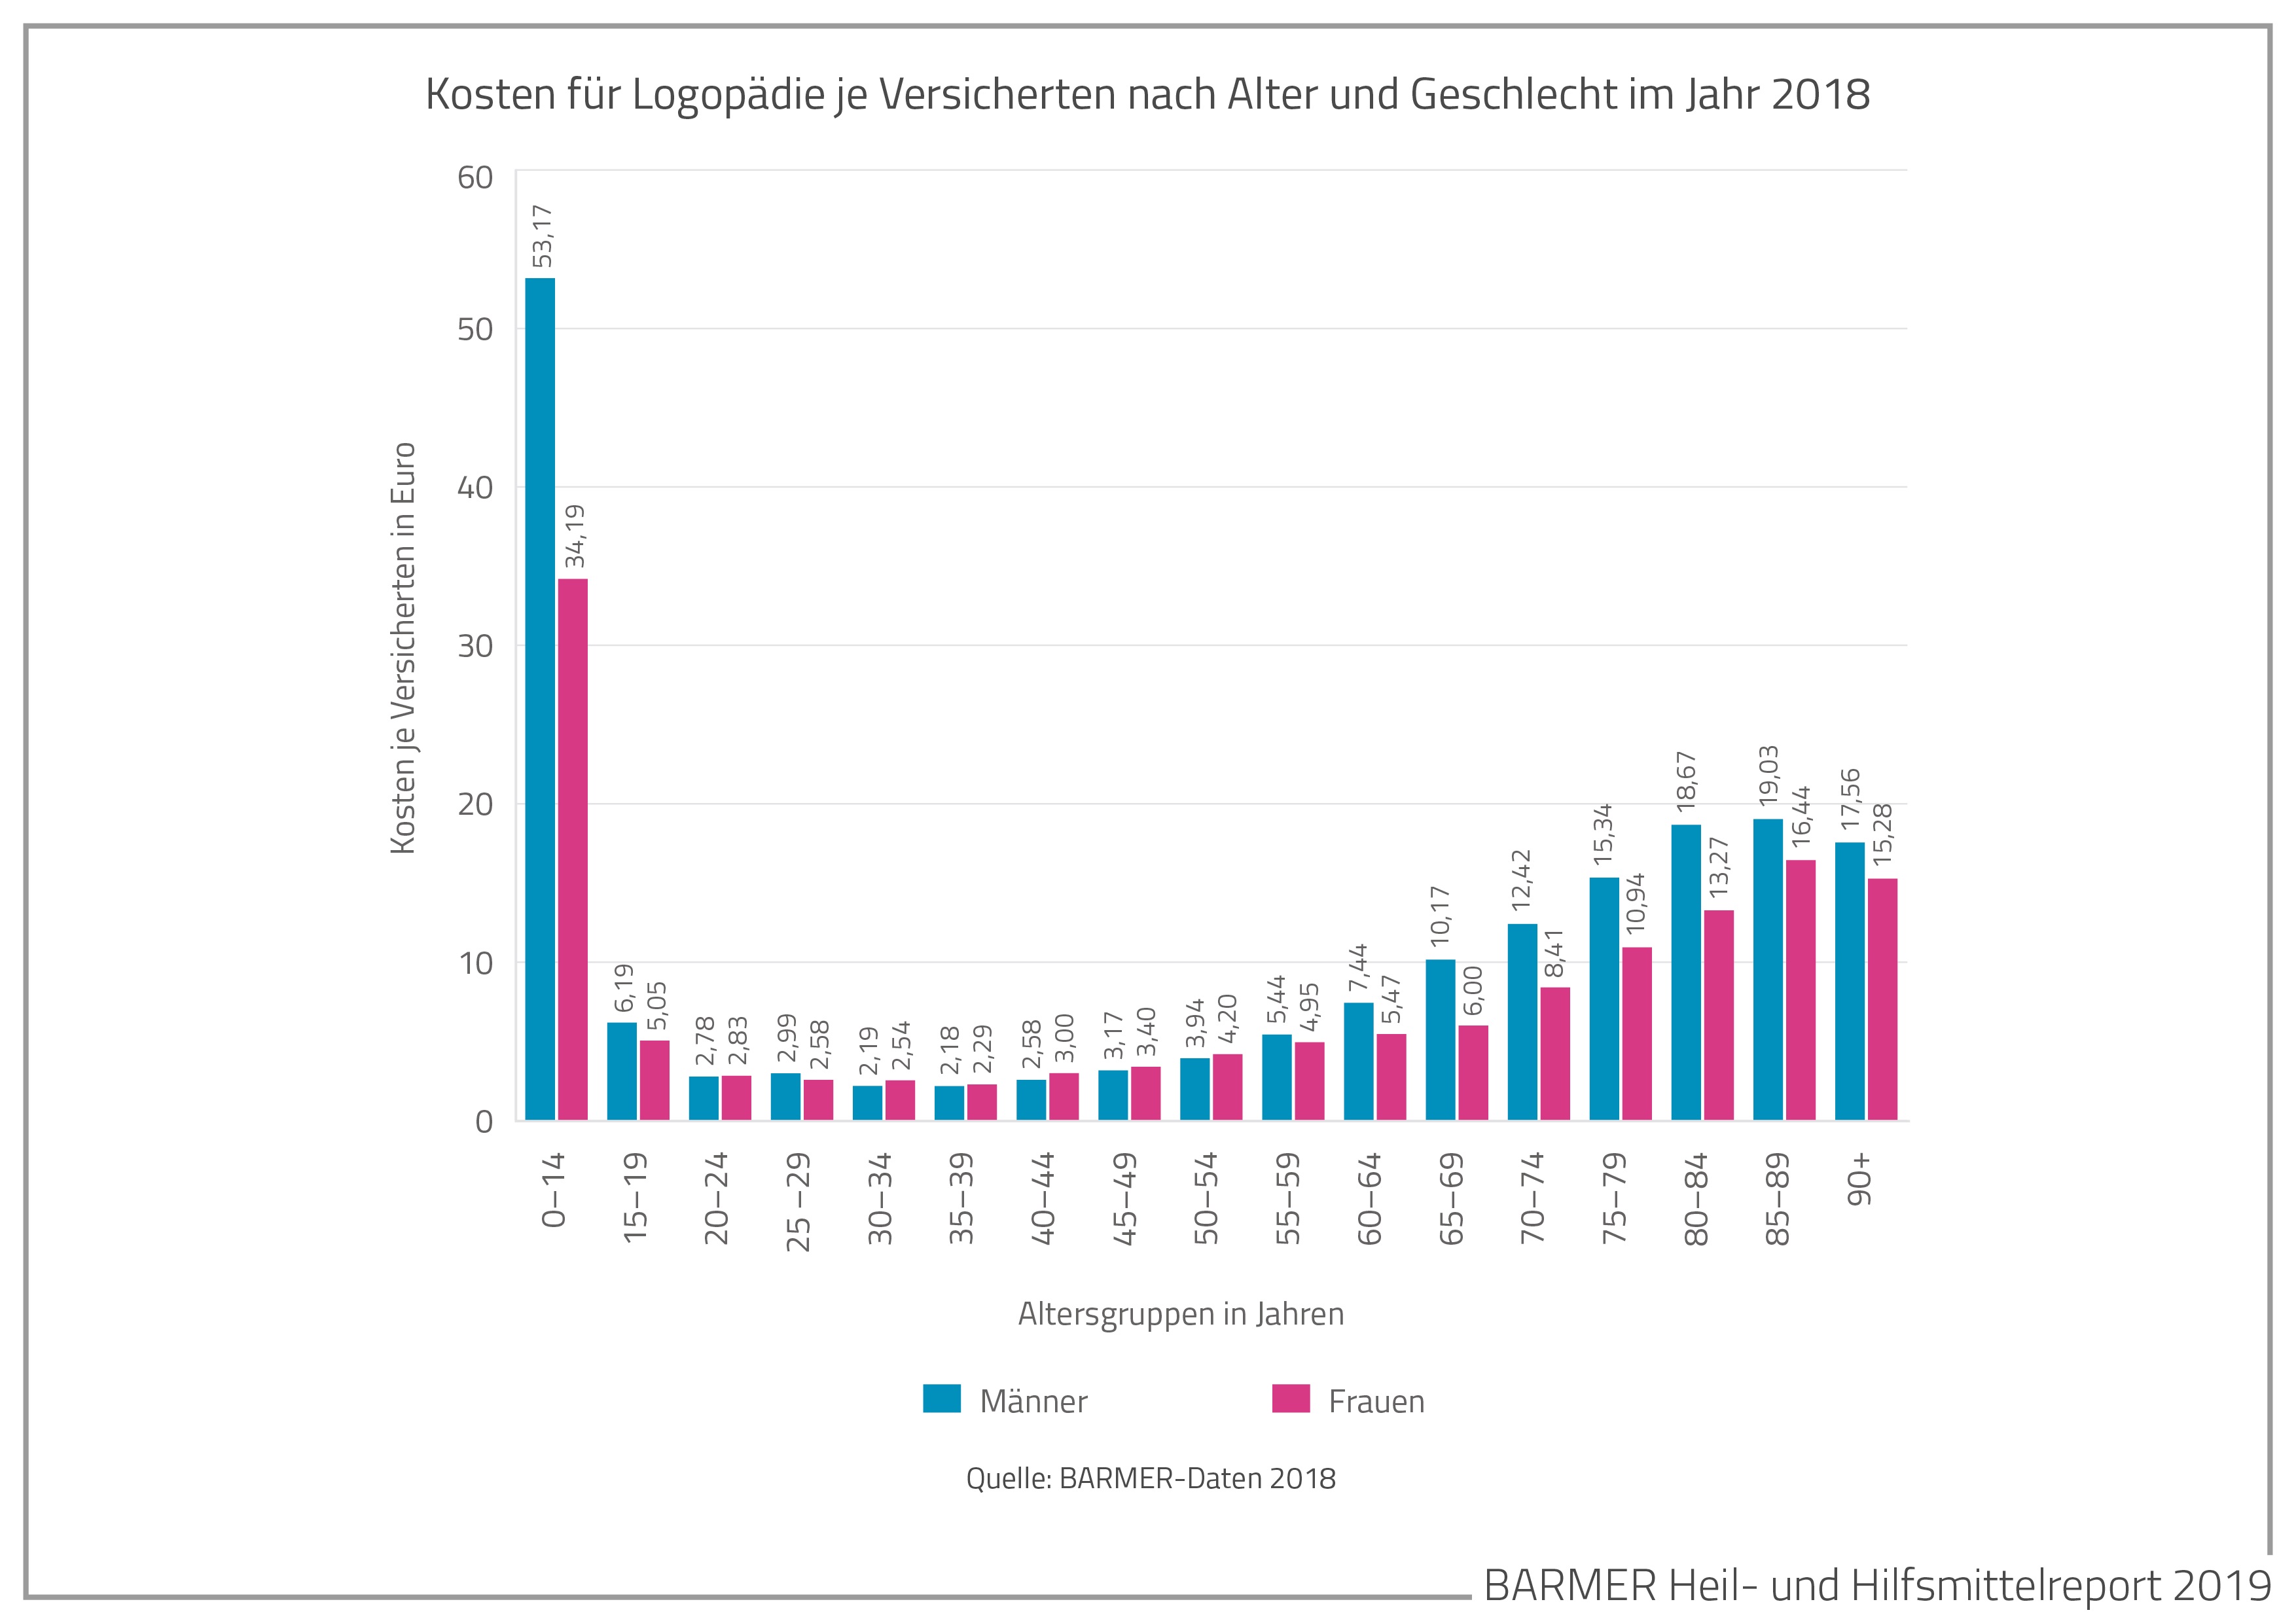 Die Grafik zeigt die Kosten für Logopädie je Versicherten nach Alter und Geschlecht im Jahr 2018